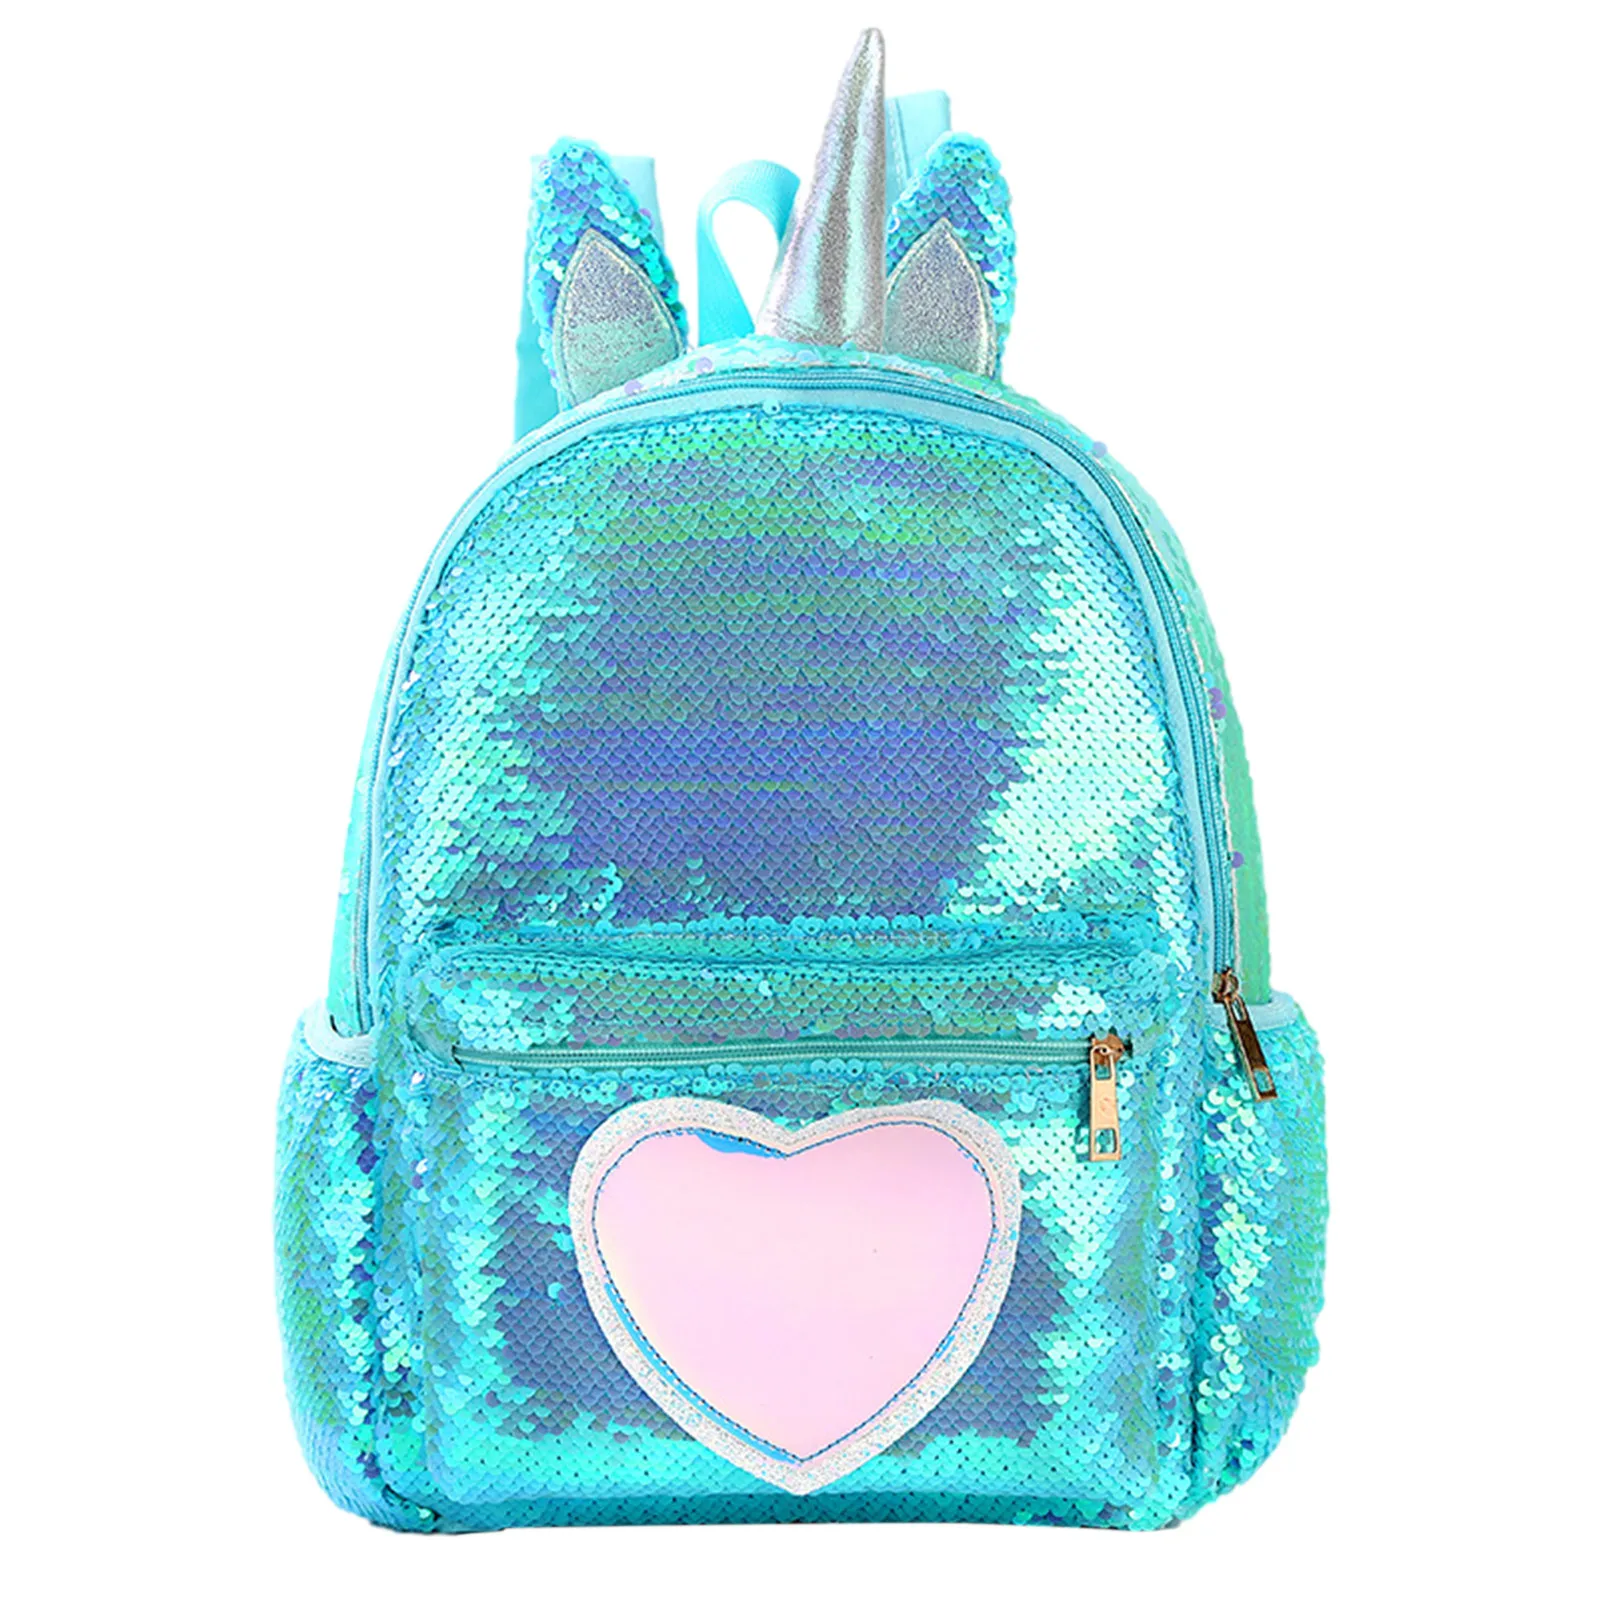 Модный рюкзак для девочек с блестками и единорогом, Женская вместительная сумка из искусственной кожи, школьный рюкзак для девочек с принто...